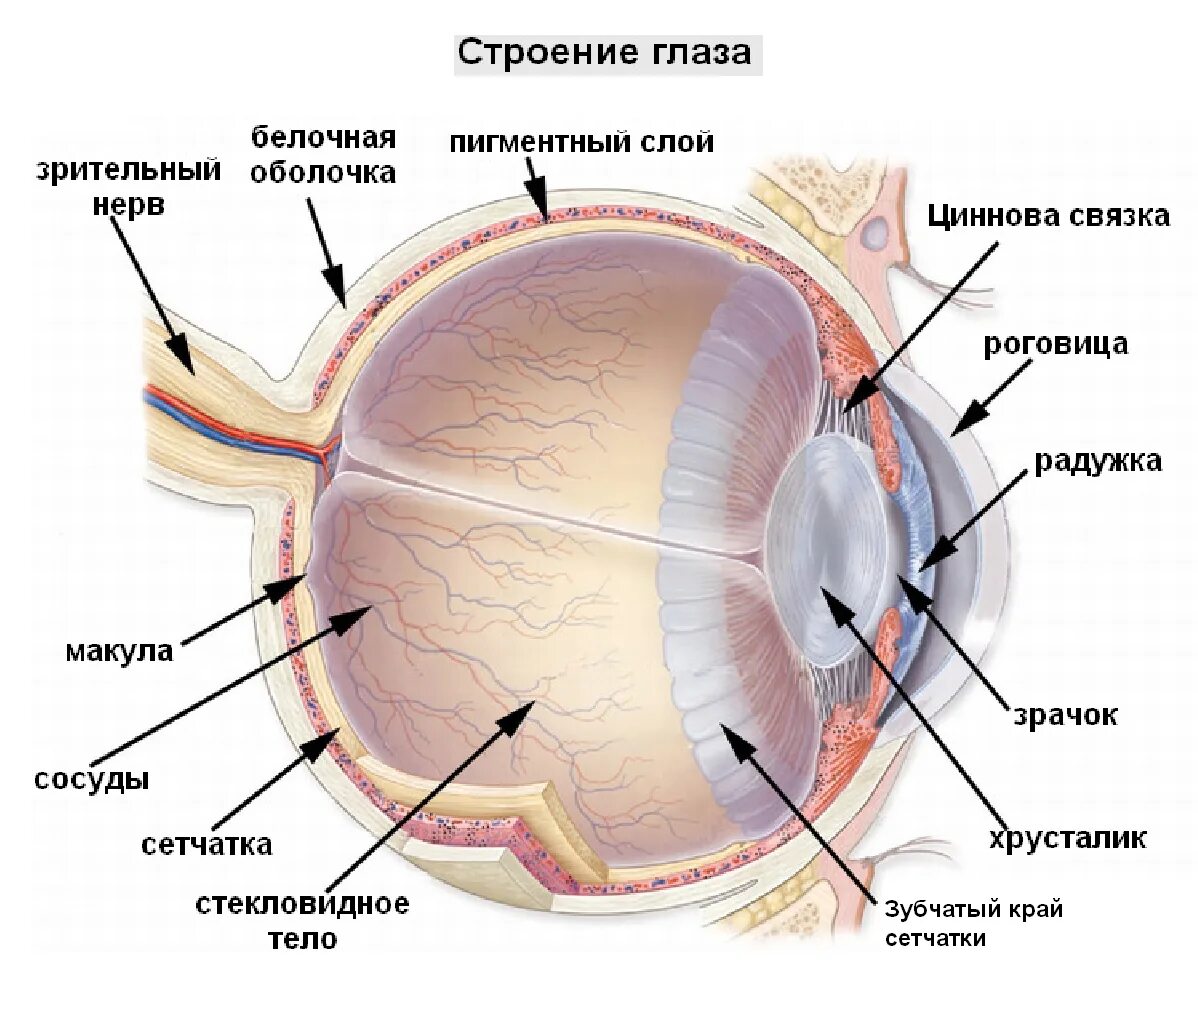 Белочная оболочка глаза прозрачна отметьте верные. Сетчатка оболочка глаза. Строение глаза послойно. Строение глазного яблока и сетчатки. Структура глазного яблока схема.